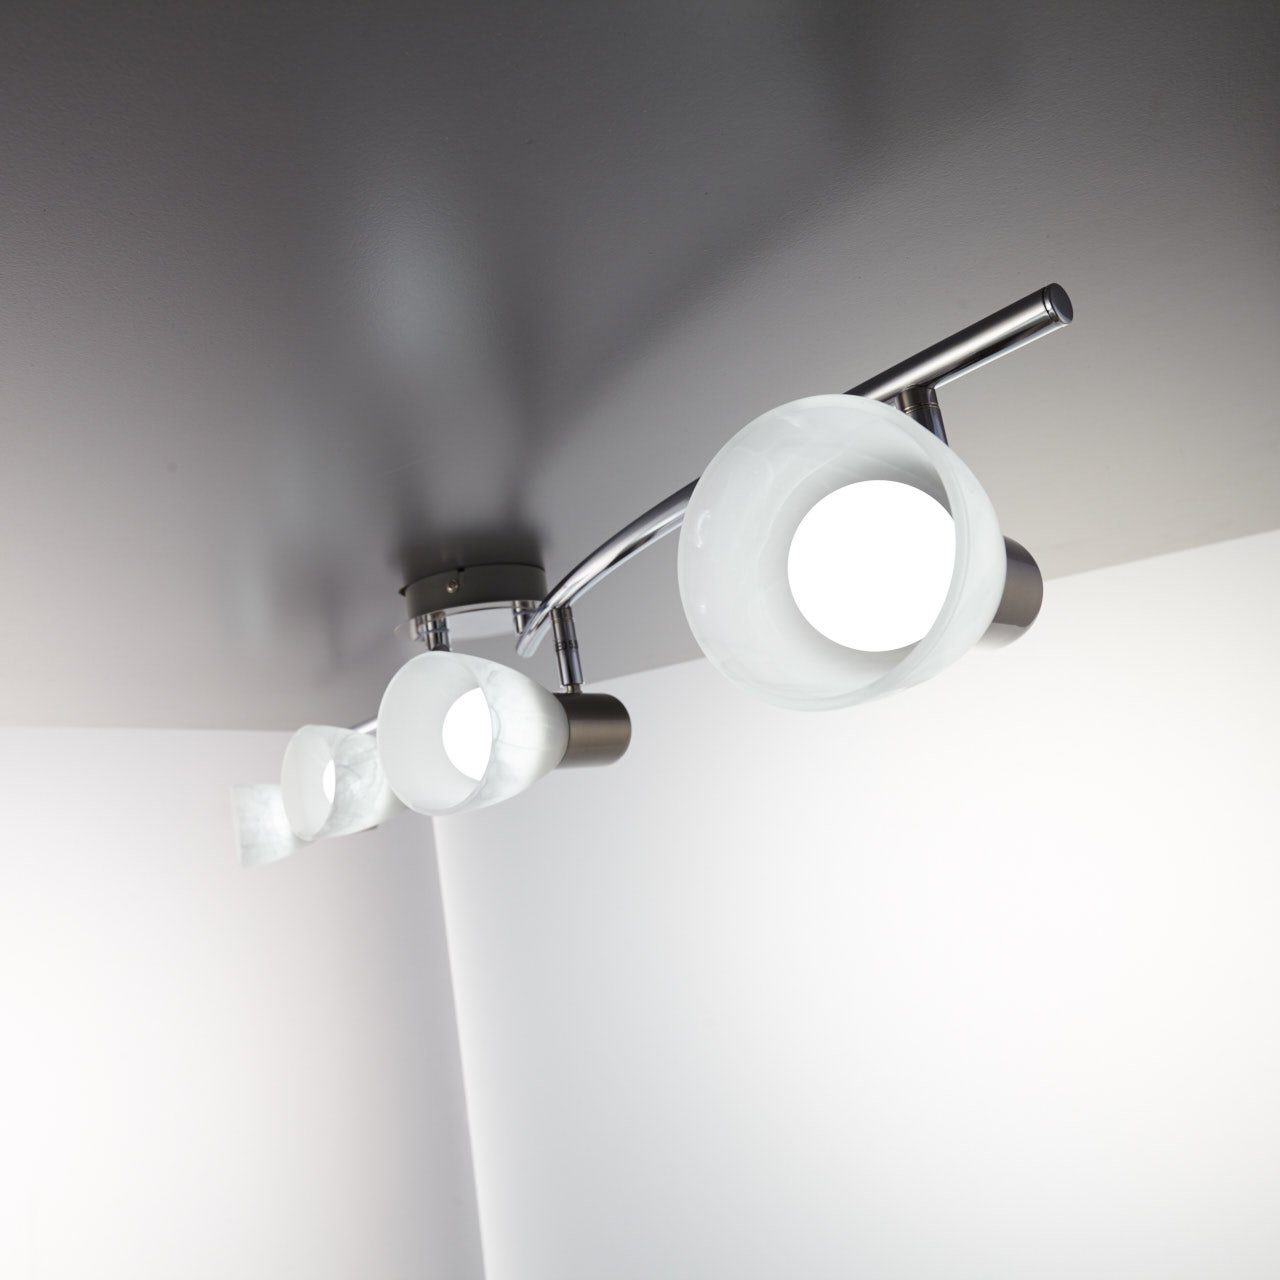 Spot E14 schwenkbar Deckenstrahler, wechselbar, LED Leuchte Metall Leuchtmittel Wohnzimmer LED Glas Warmweiß, B.K.Licht Deckenlampe